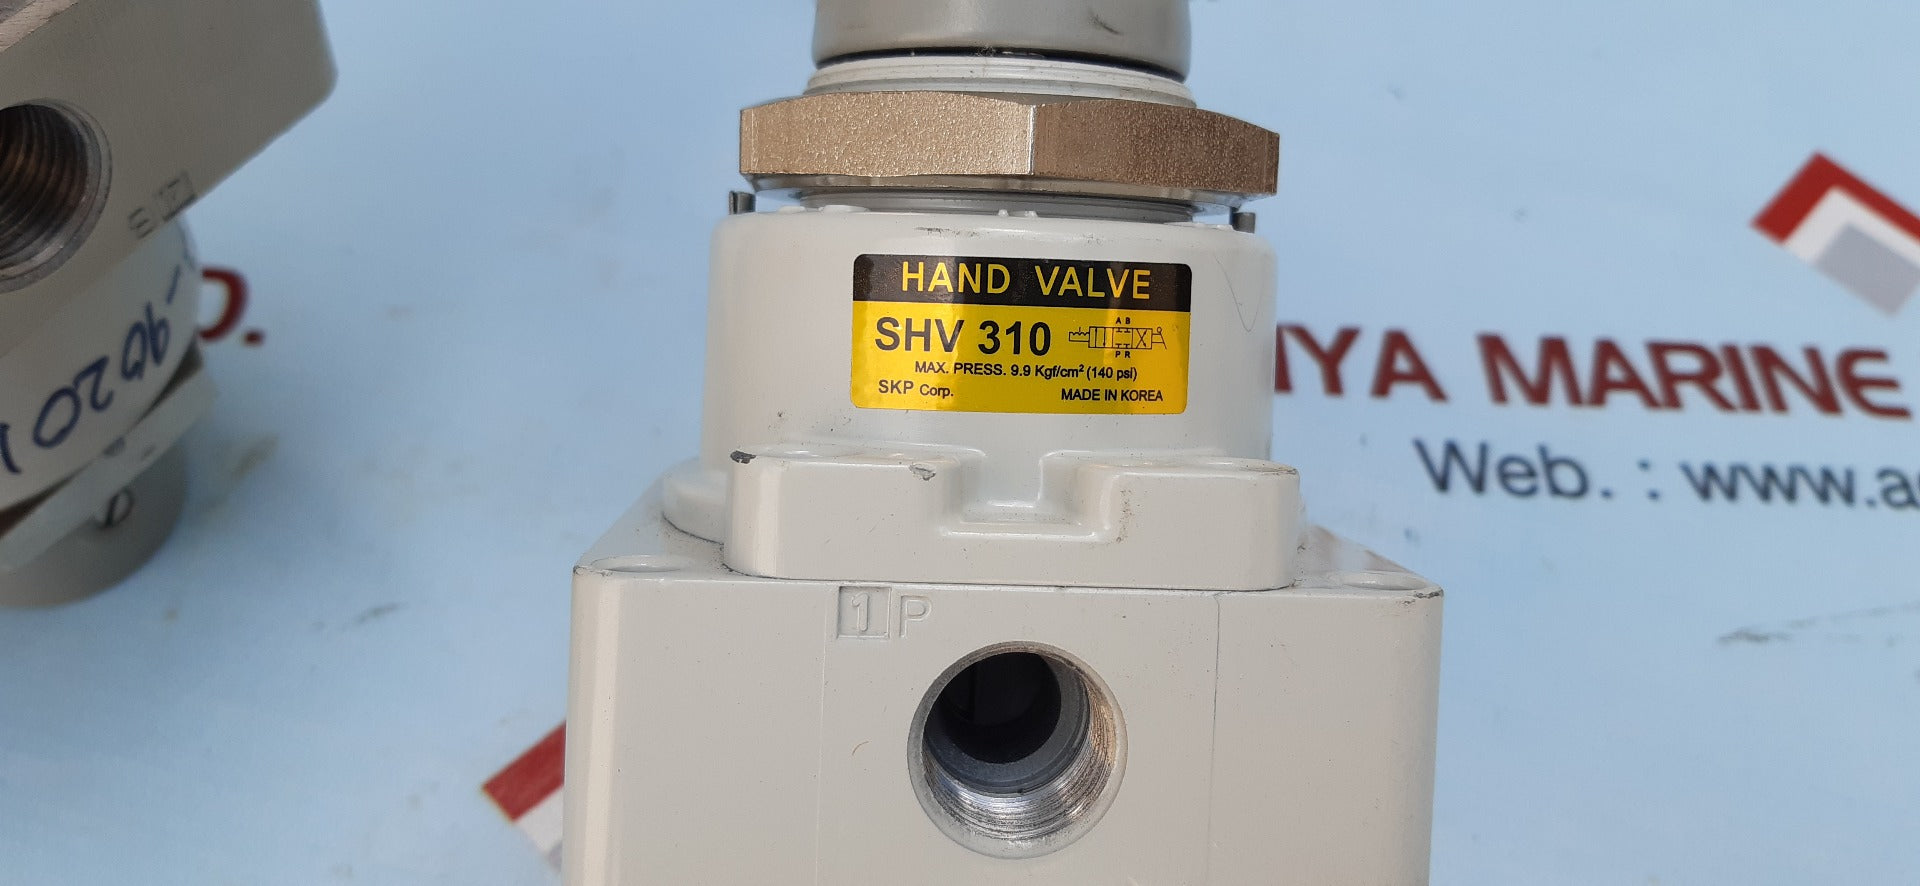 Skp shv 310 hand valve